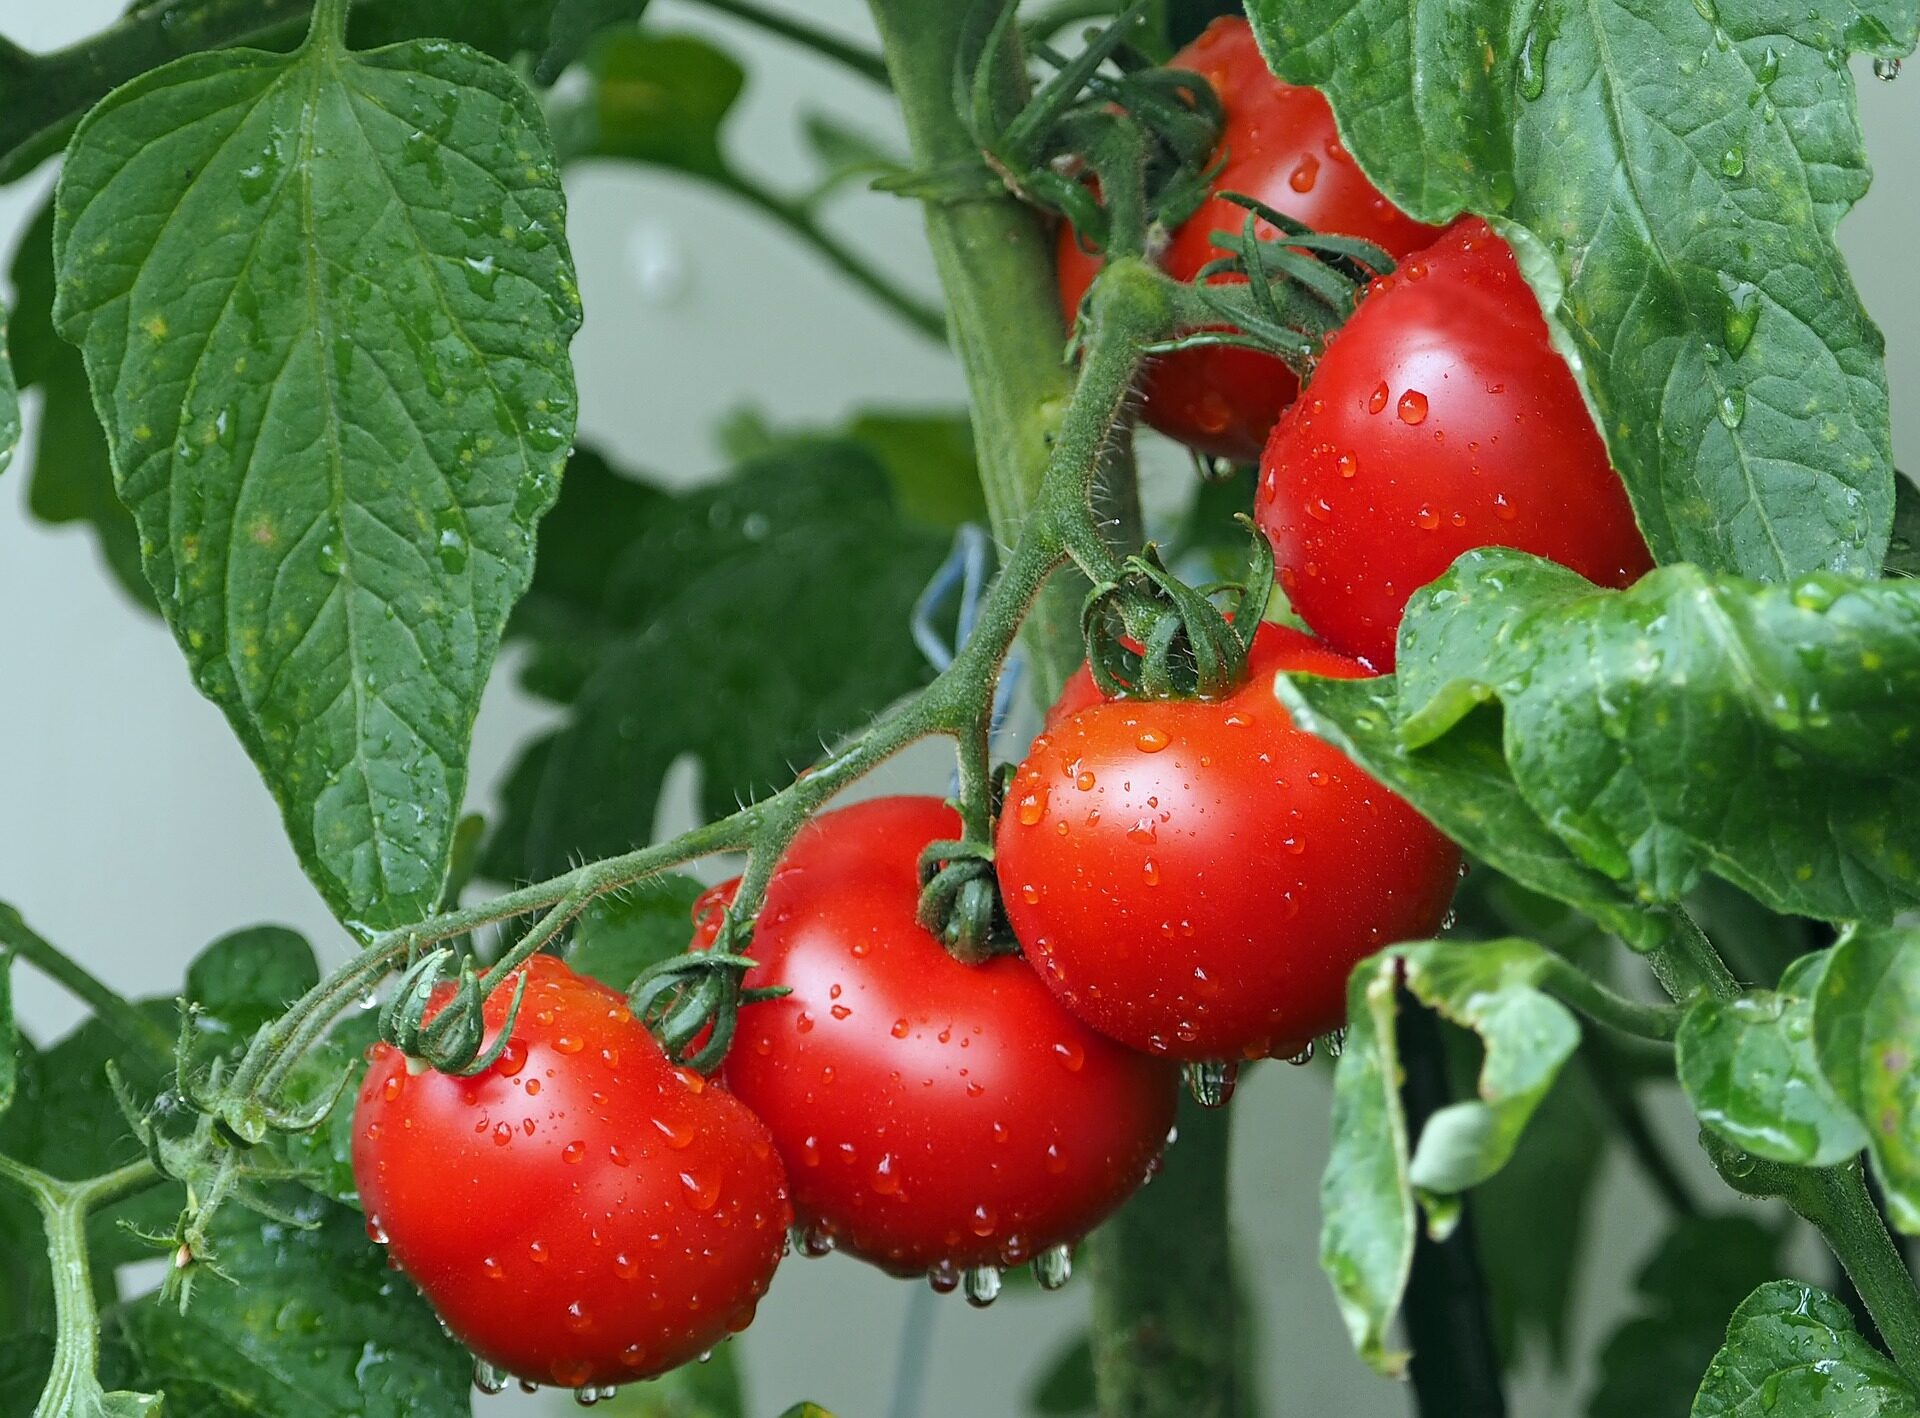 Luego plante tomates el próximo año.  Que plantar después de los tomates.